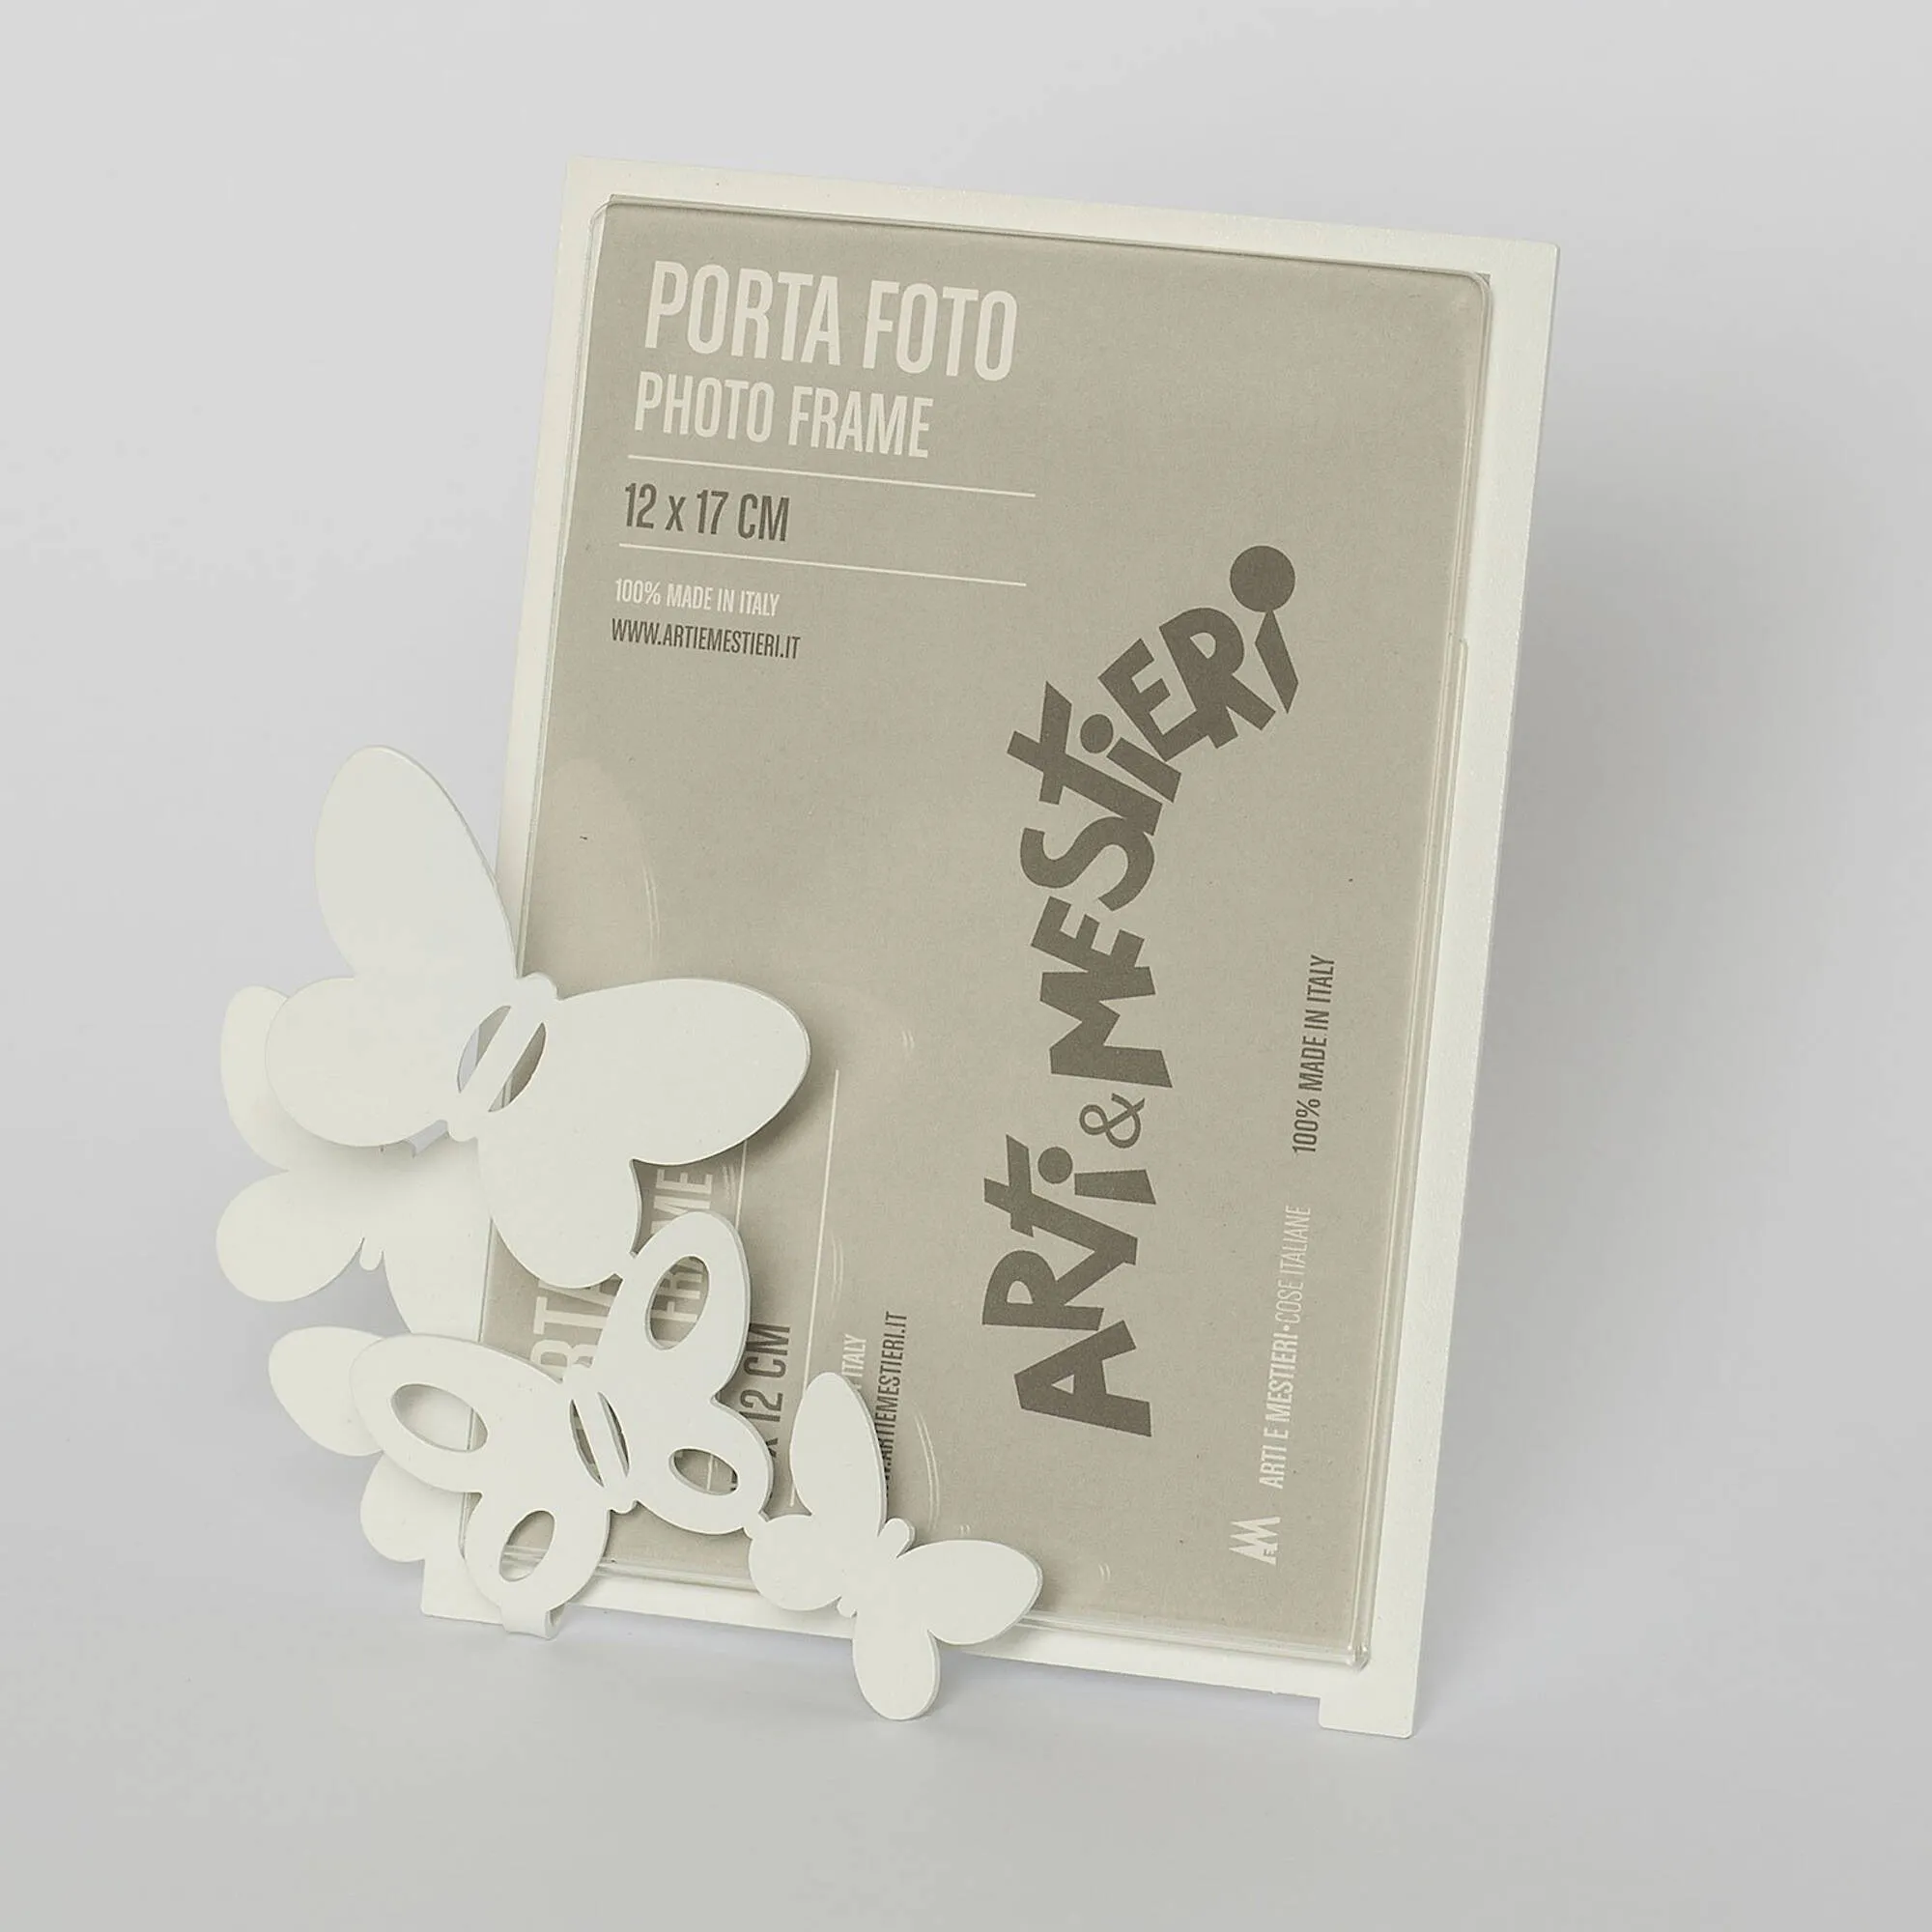 Porta foto Farfalle in metallo verniciato, per foto 9,5xh12,5 cm - Dimensione Porta foto 12xh13 cm colore Bianco Neve